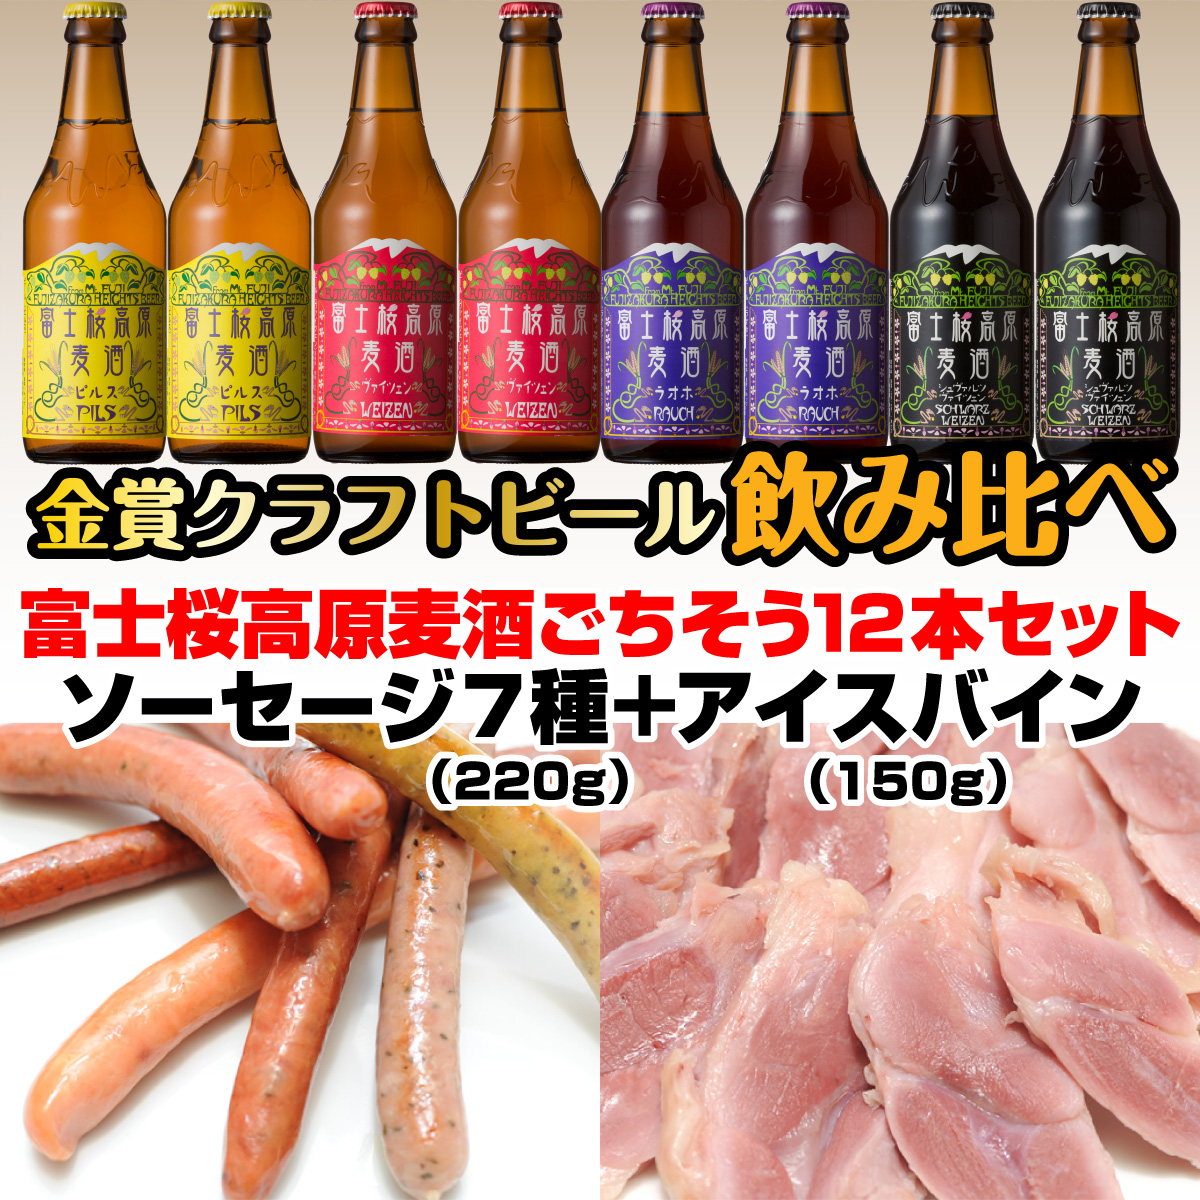 富士桜高原麦酒ごちそう12本セット 金賞クラフトビール飲み比べ